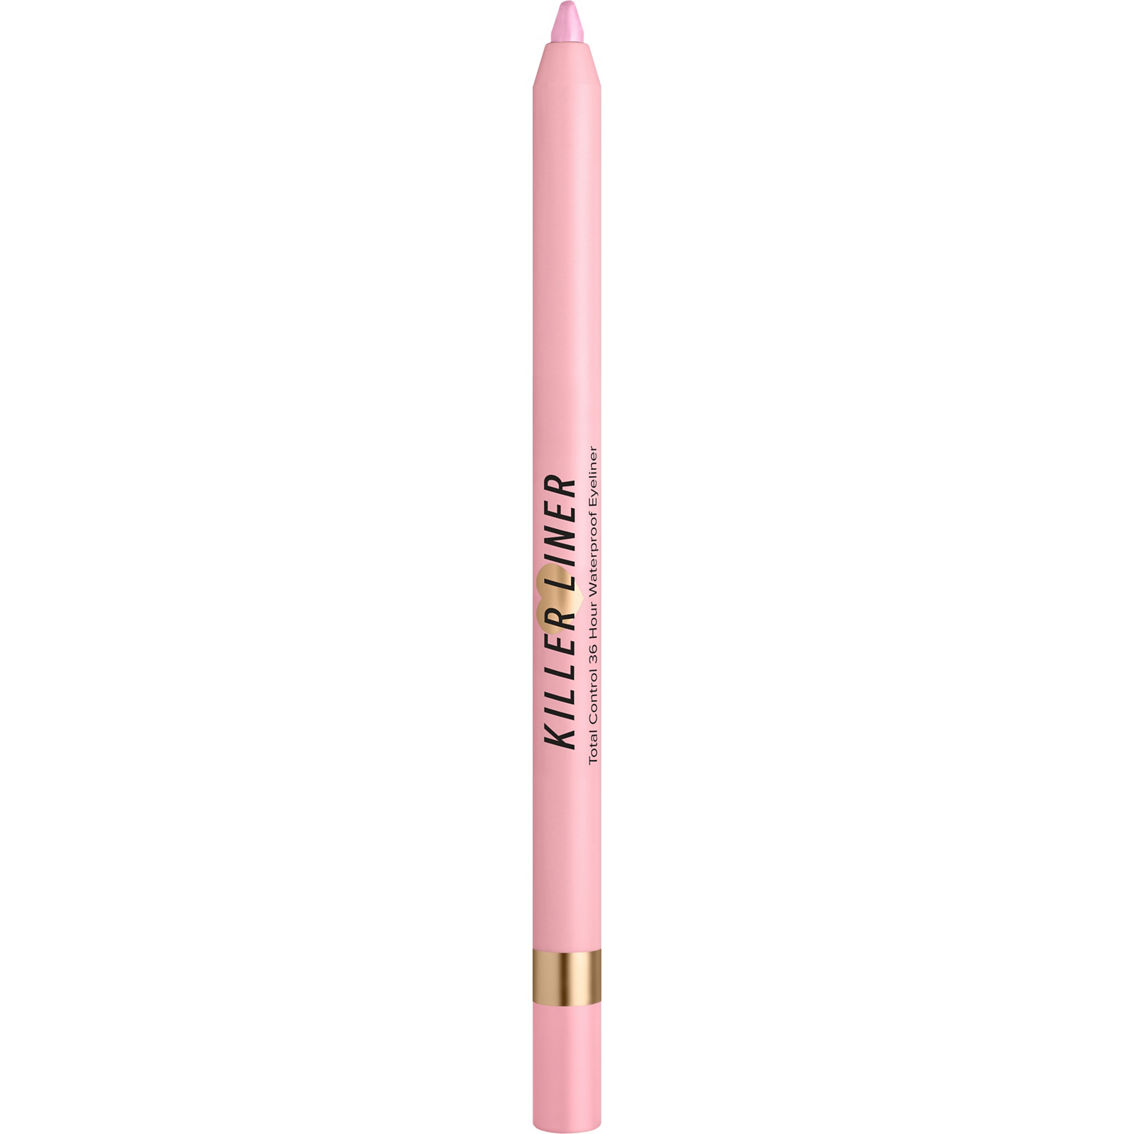 Too Faced Killer Liner 36 Hour Waterproof Gel Eyeliner Pencil - Image 2 of 4